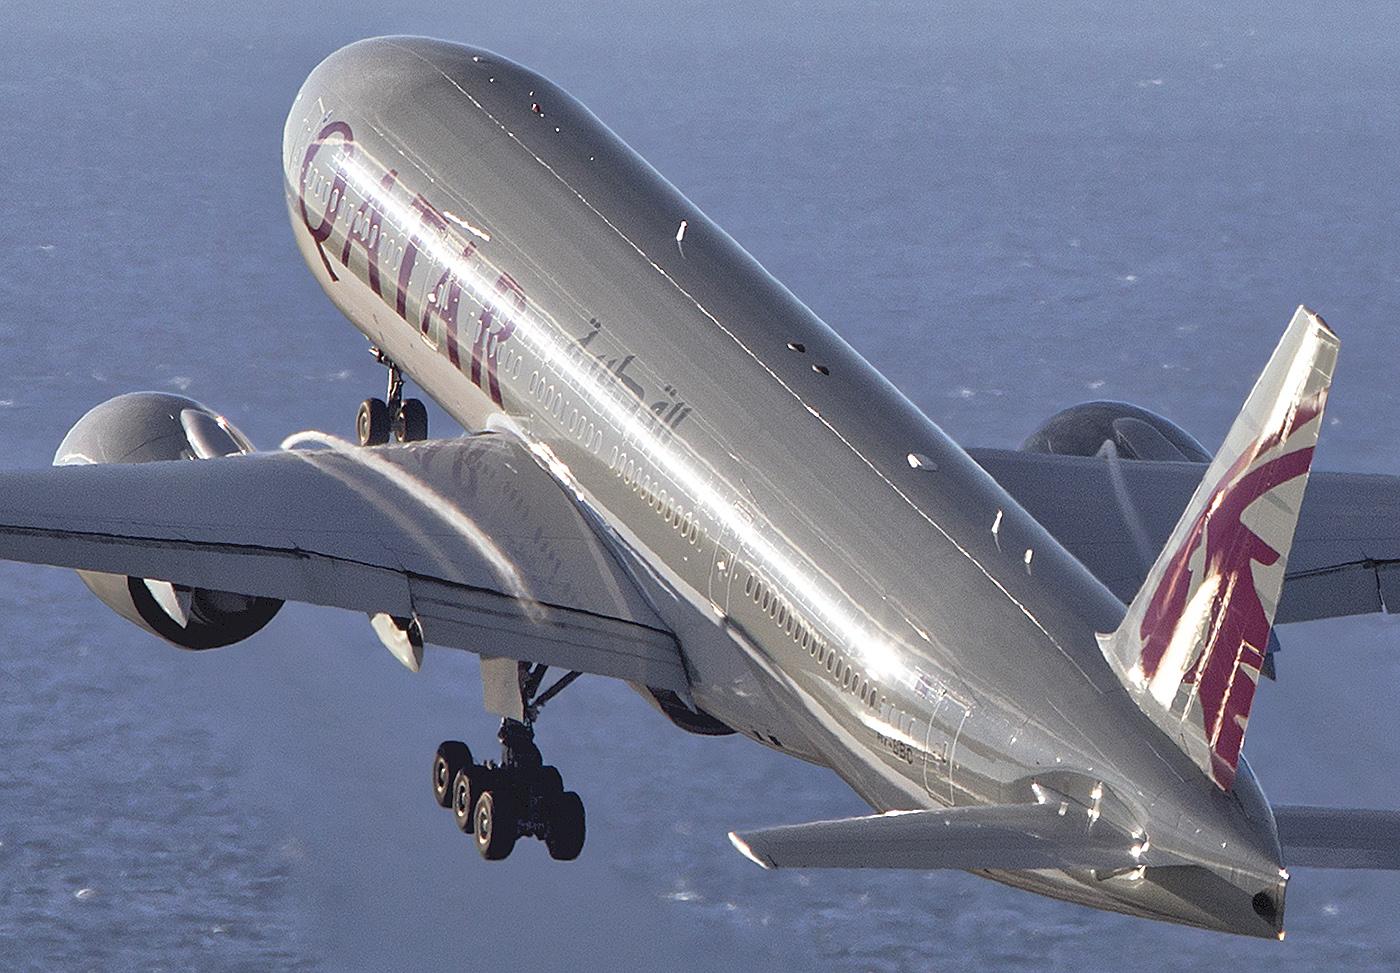 Qatar Airways 777LR